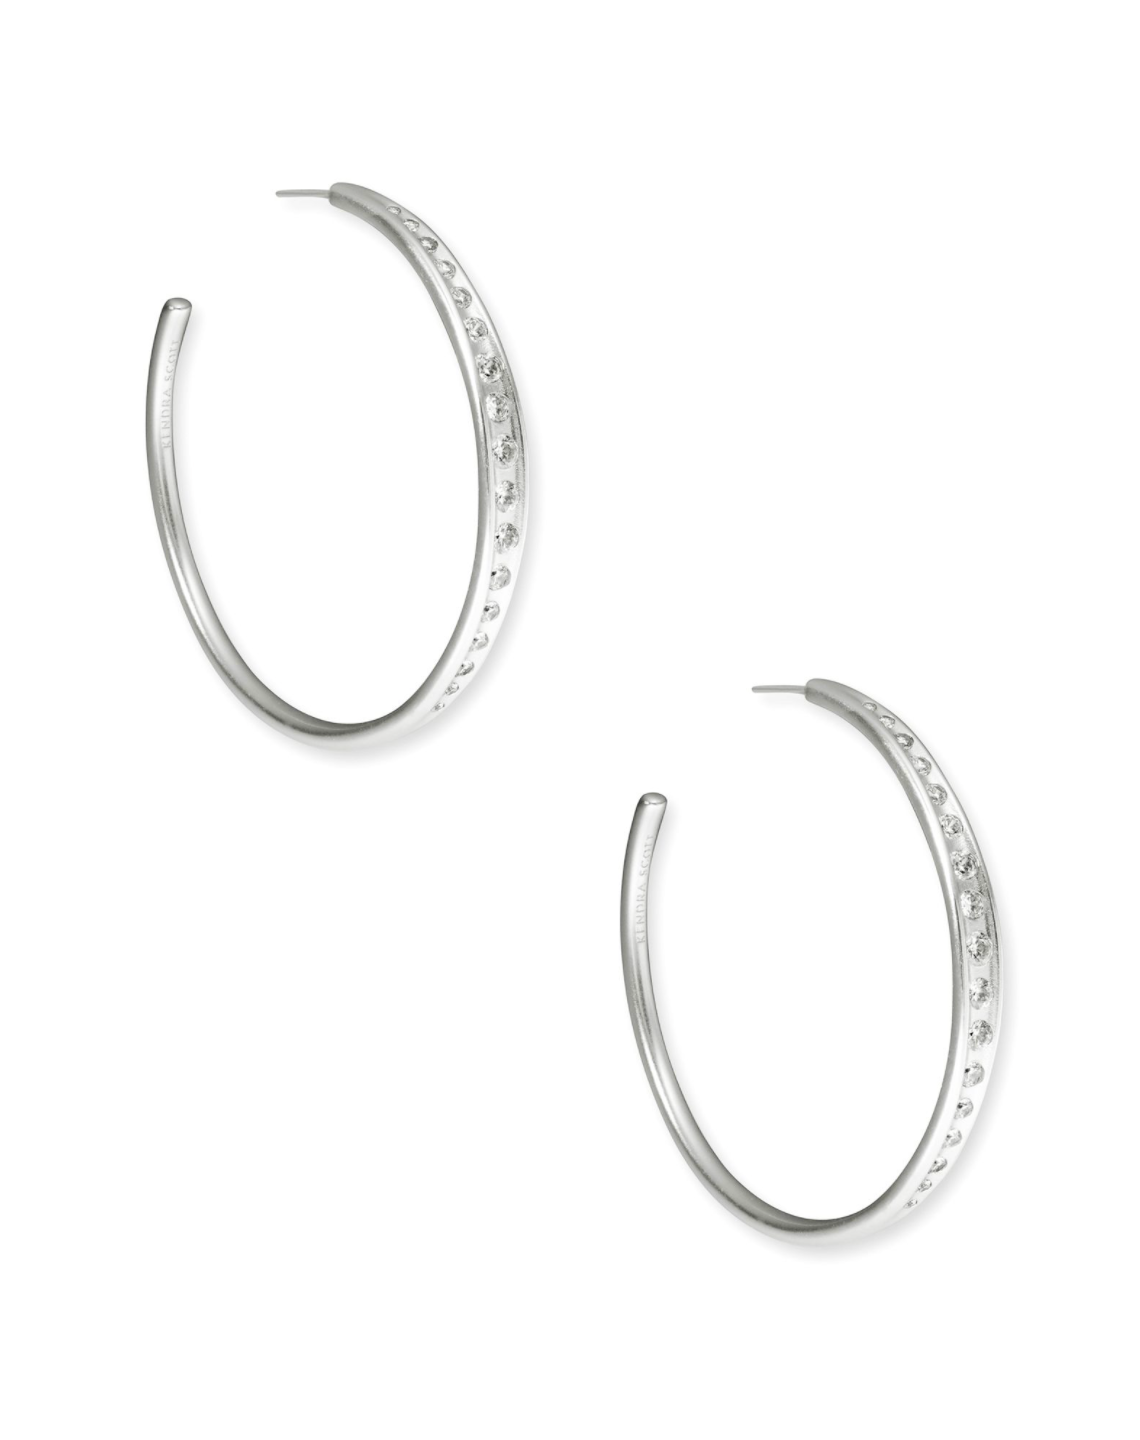 Kendra Scott Selena Hoop Earring - Silver White Cubic Zirconia